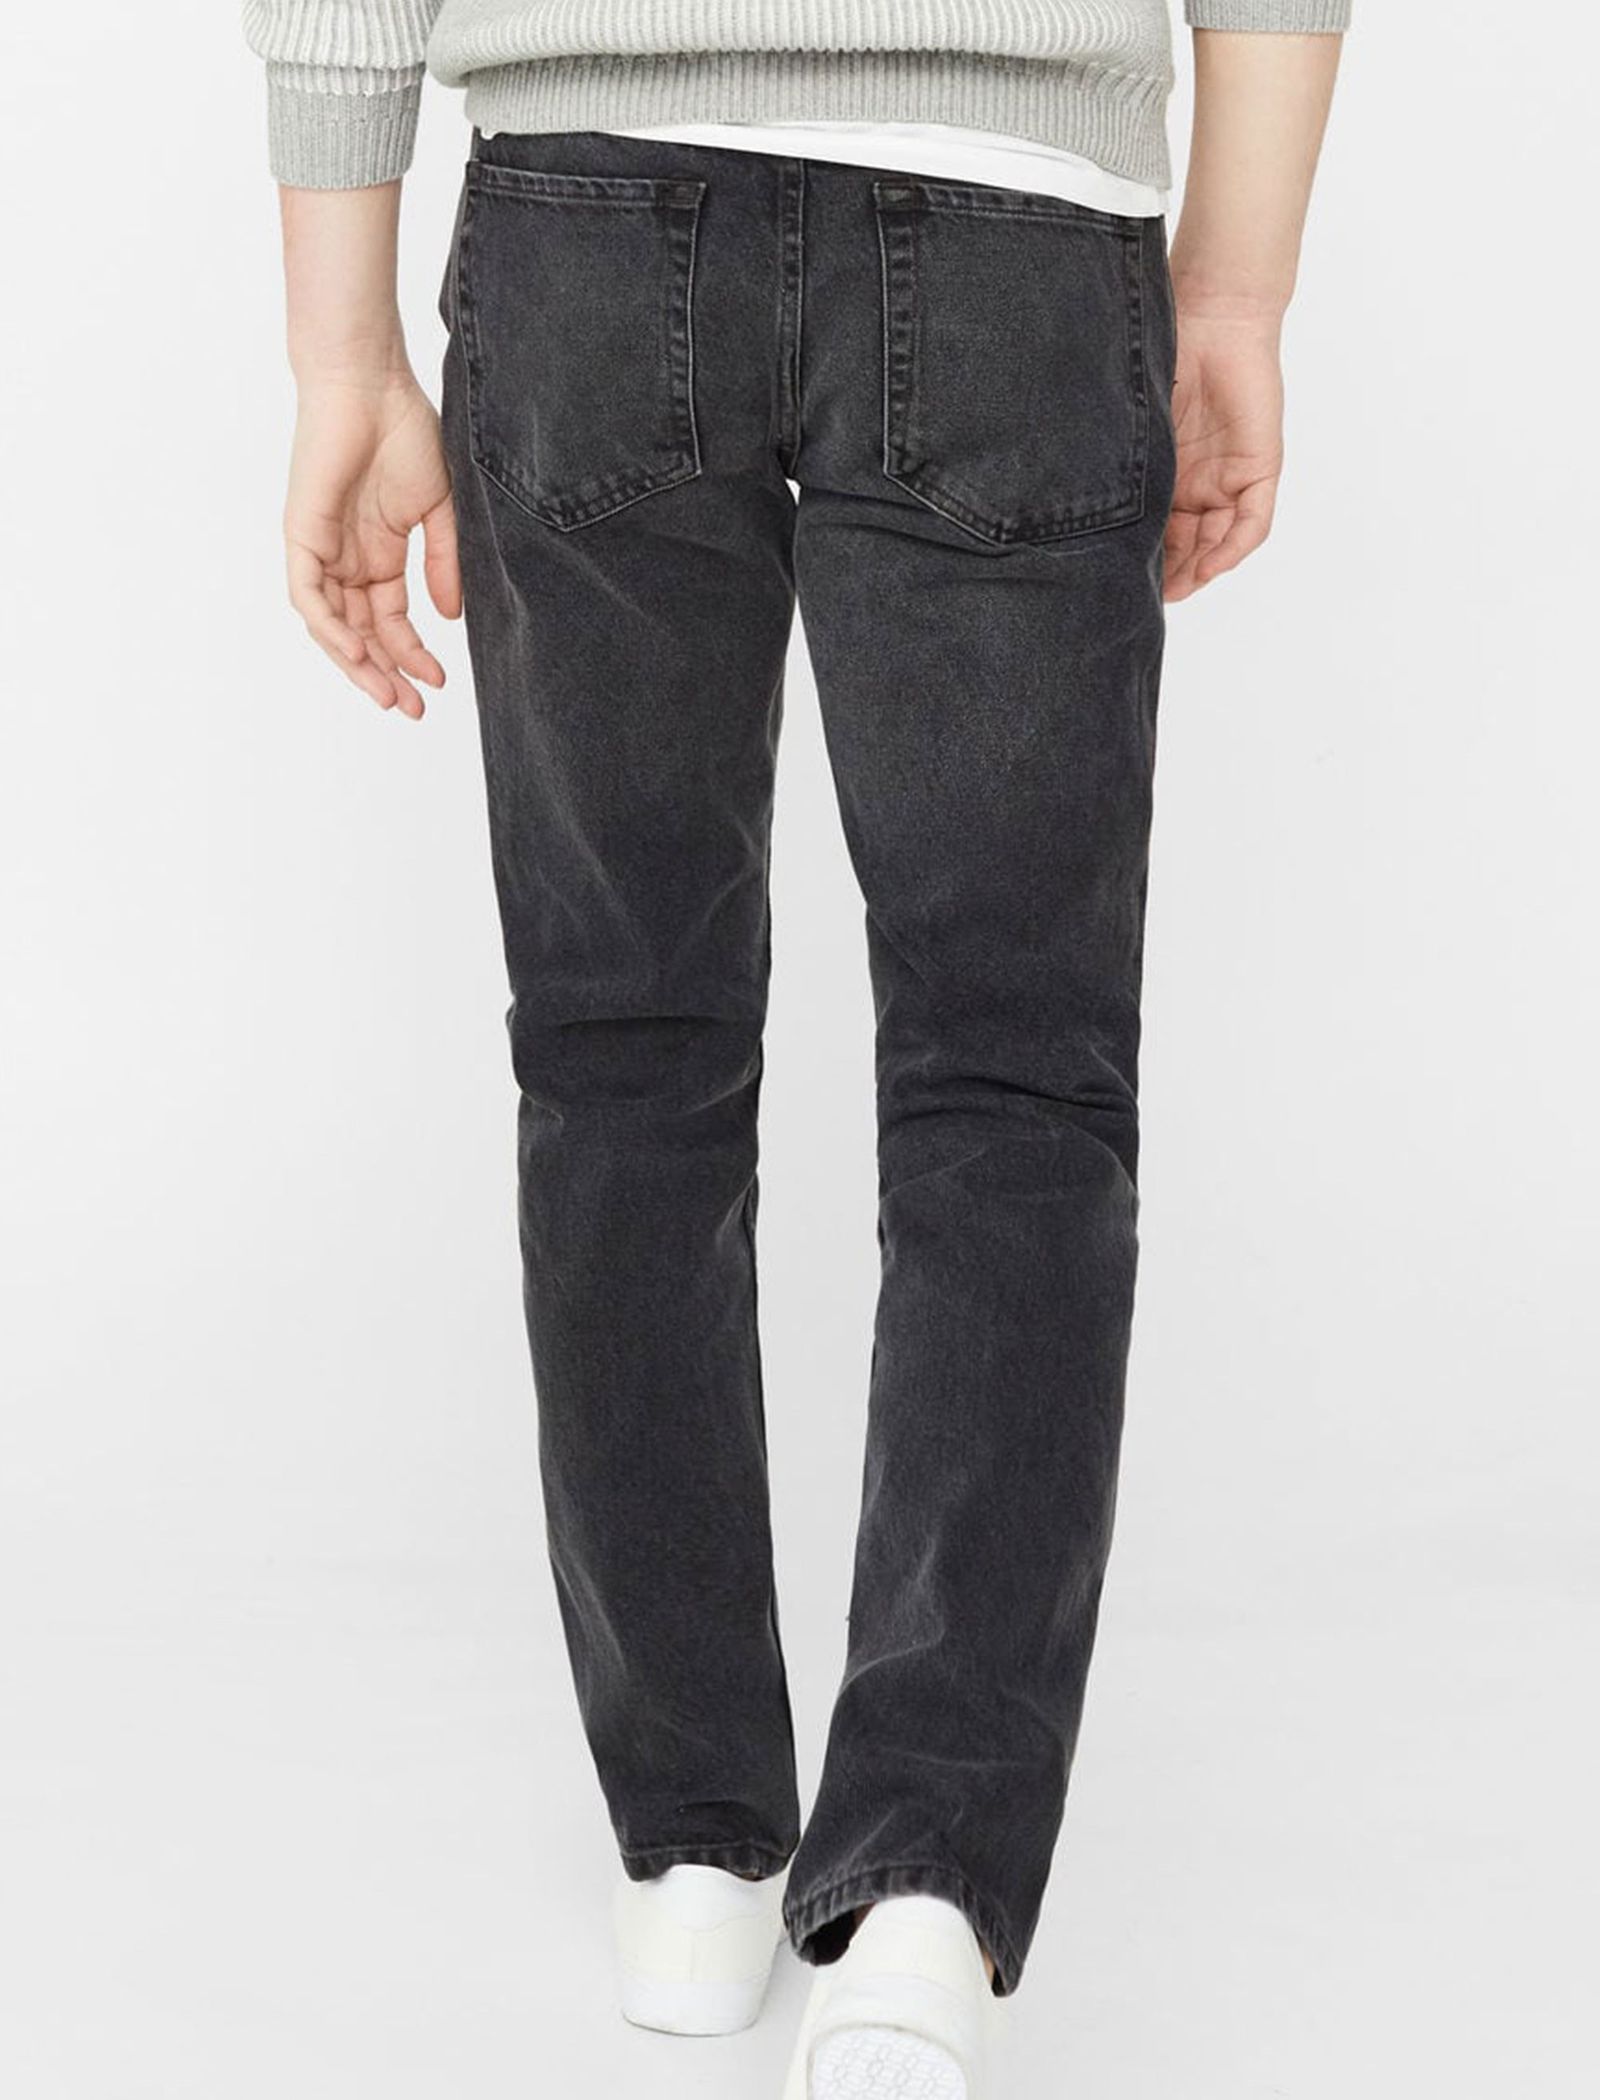 شلوار جین راسته مردانه - مانگو - زغالي - 7